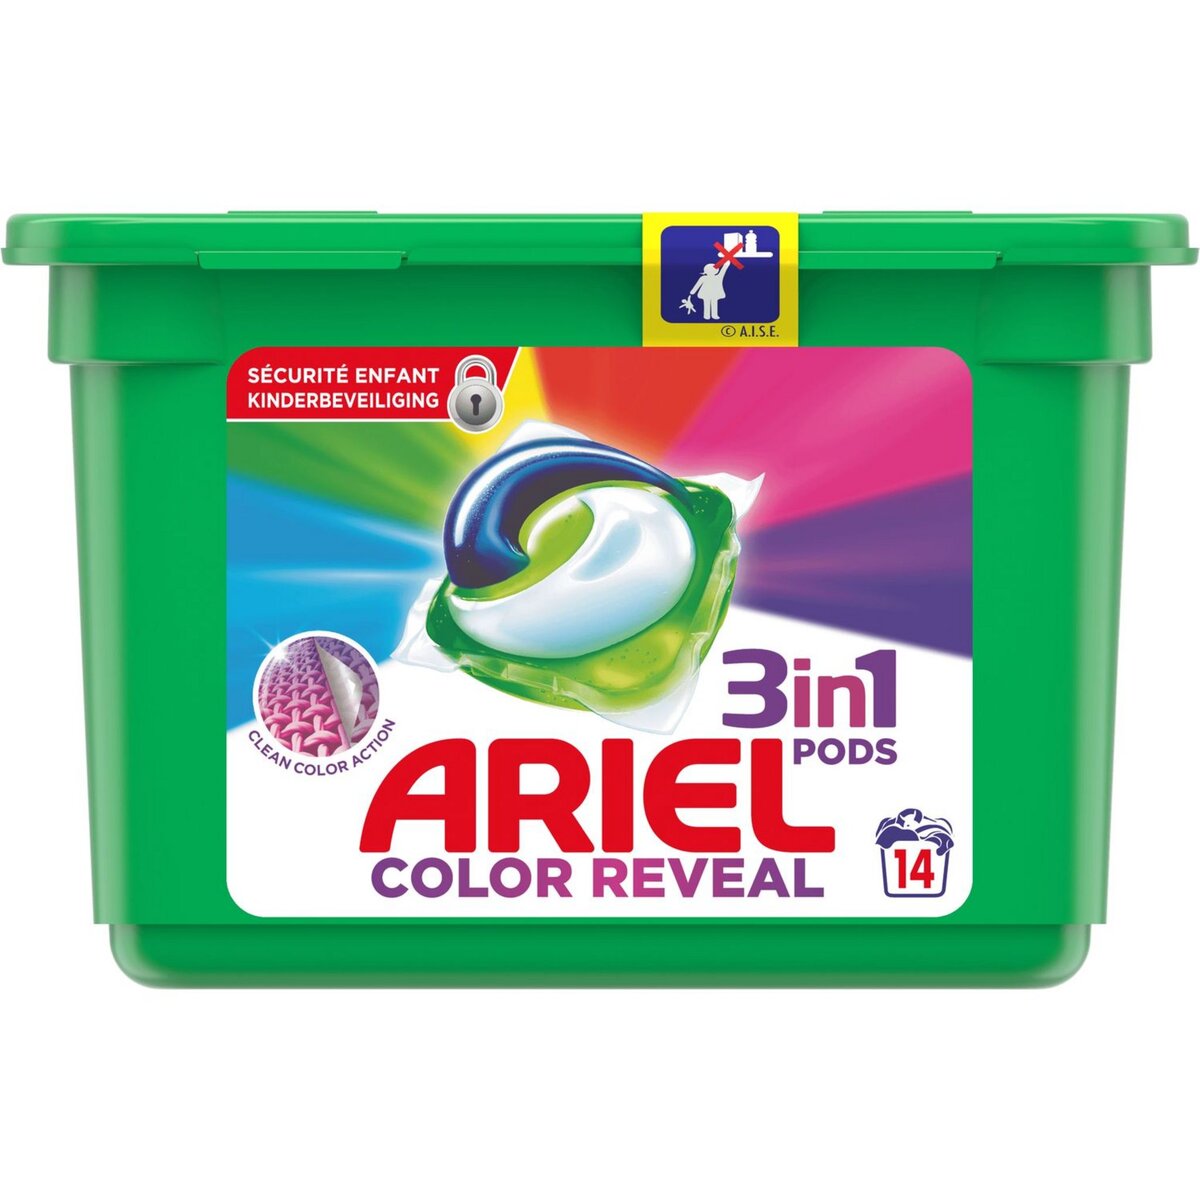 ARIEL Ariel Pods Lessive capsules color reveal 14 lavages 14 lavages 14 capsules